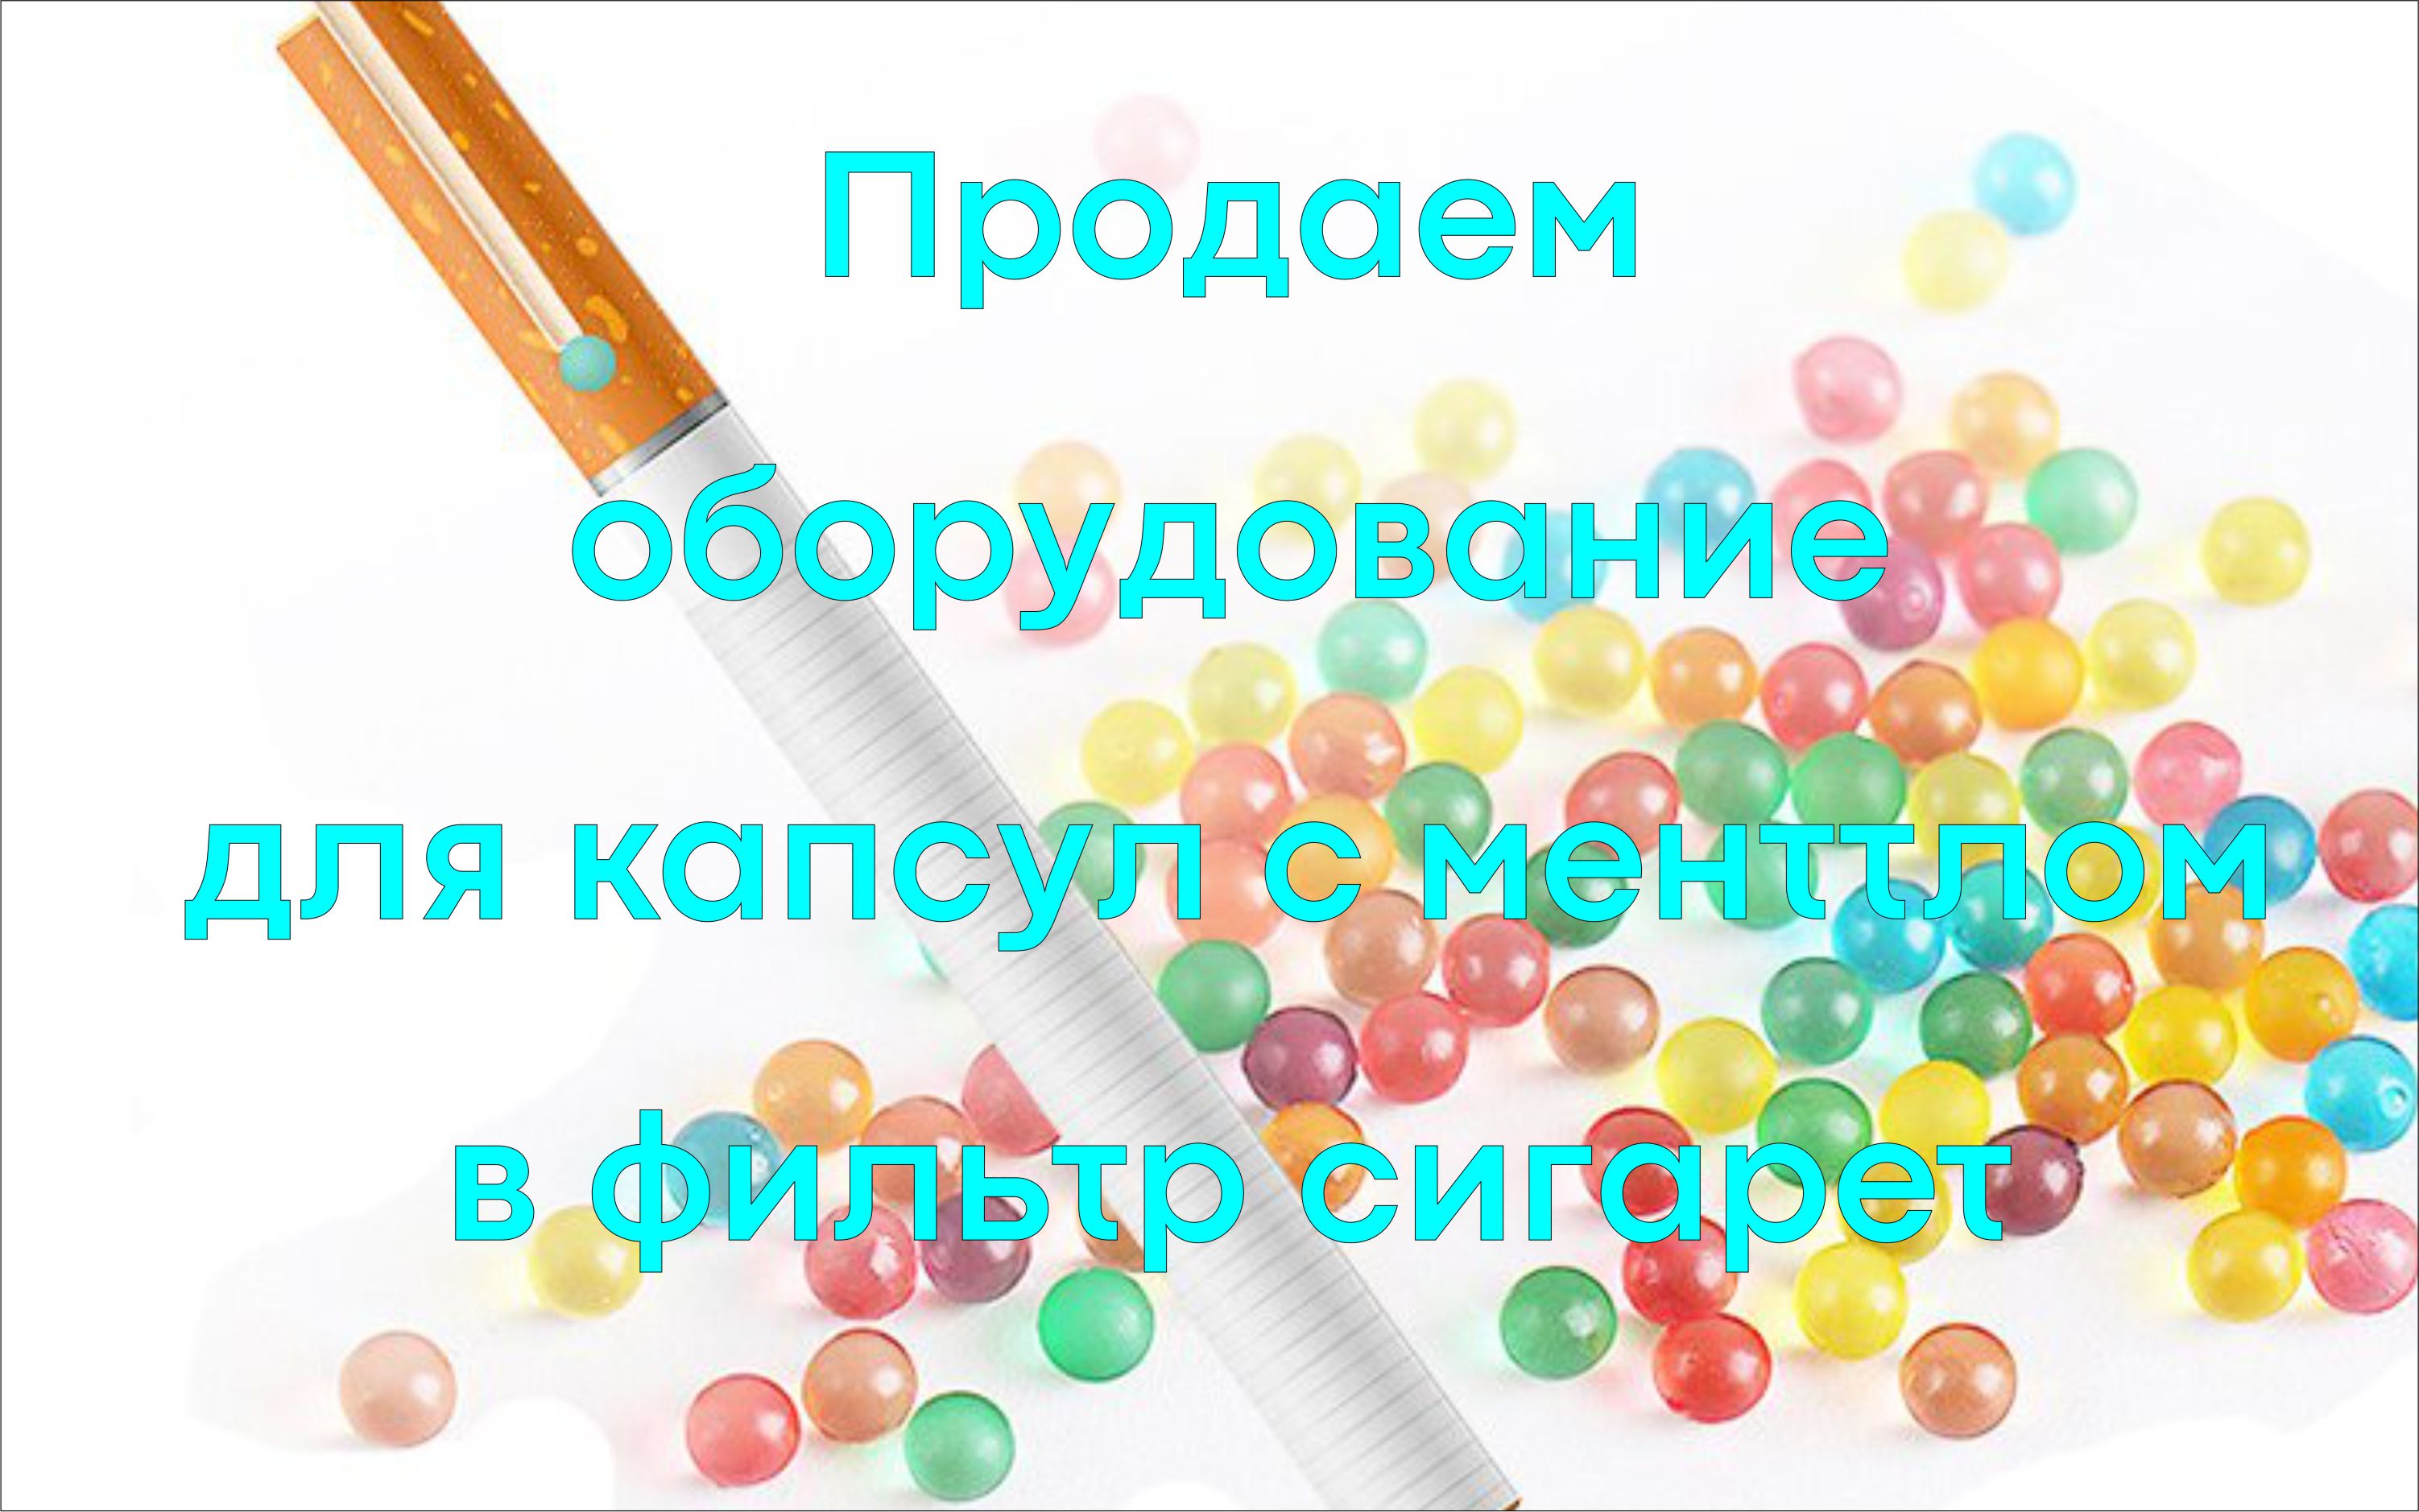 www.Kapsulator.ru Capsulator cápsulas suaves sin costuras con una cáscara de gelatina, agar, alginato